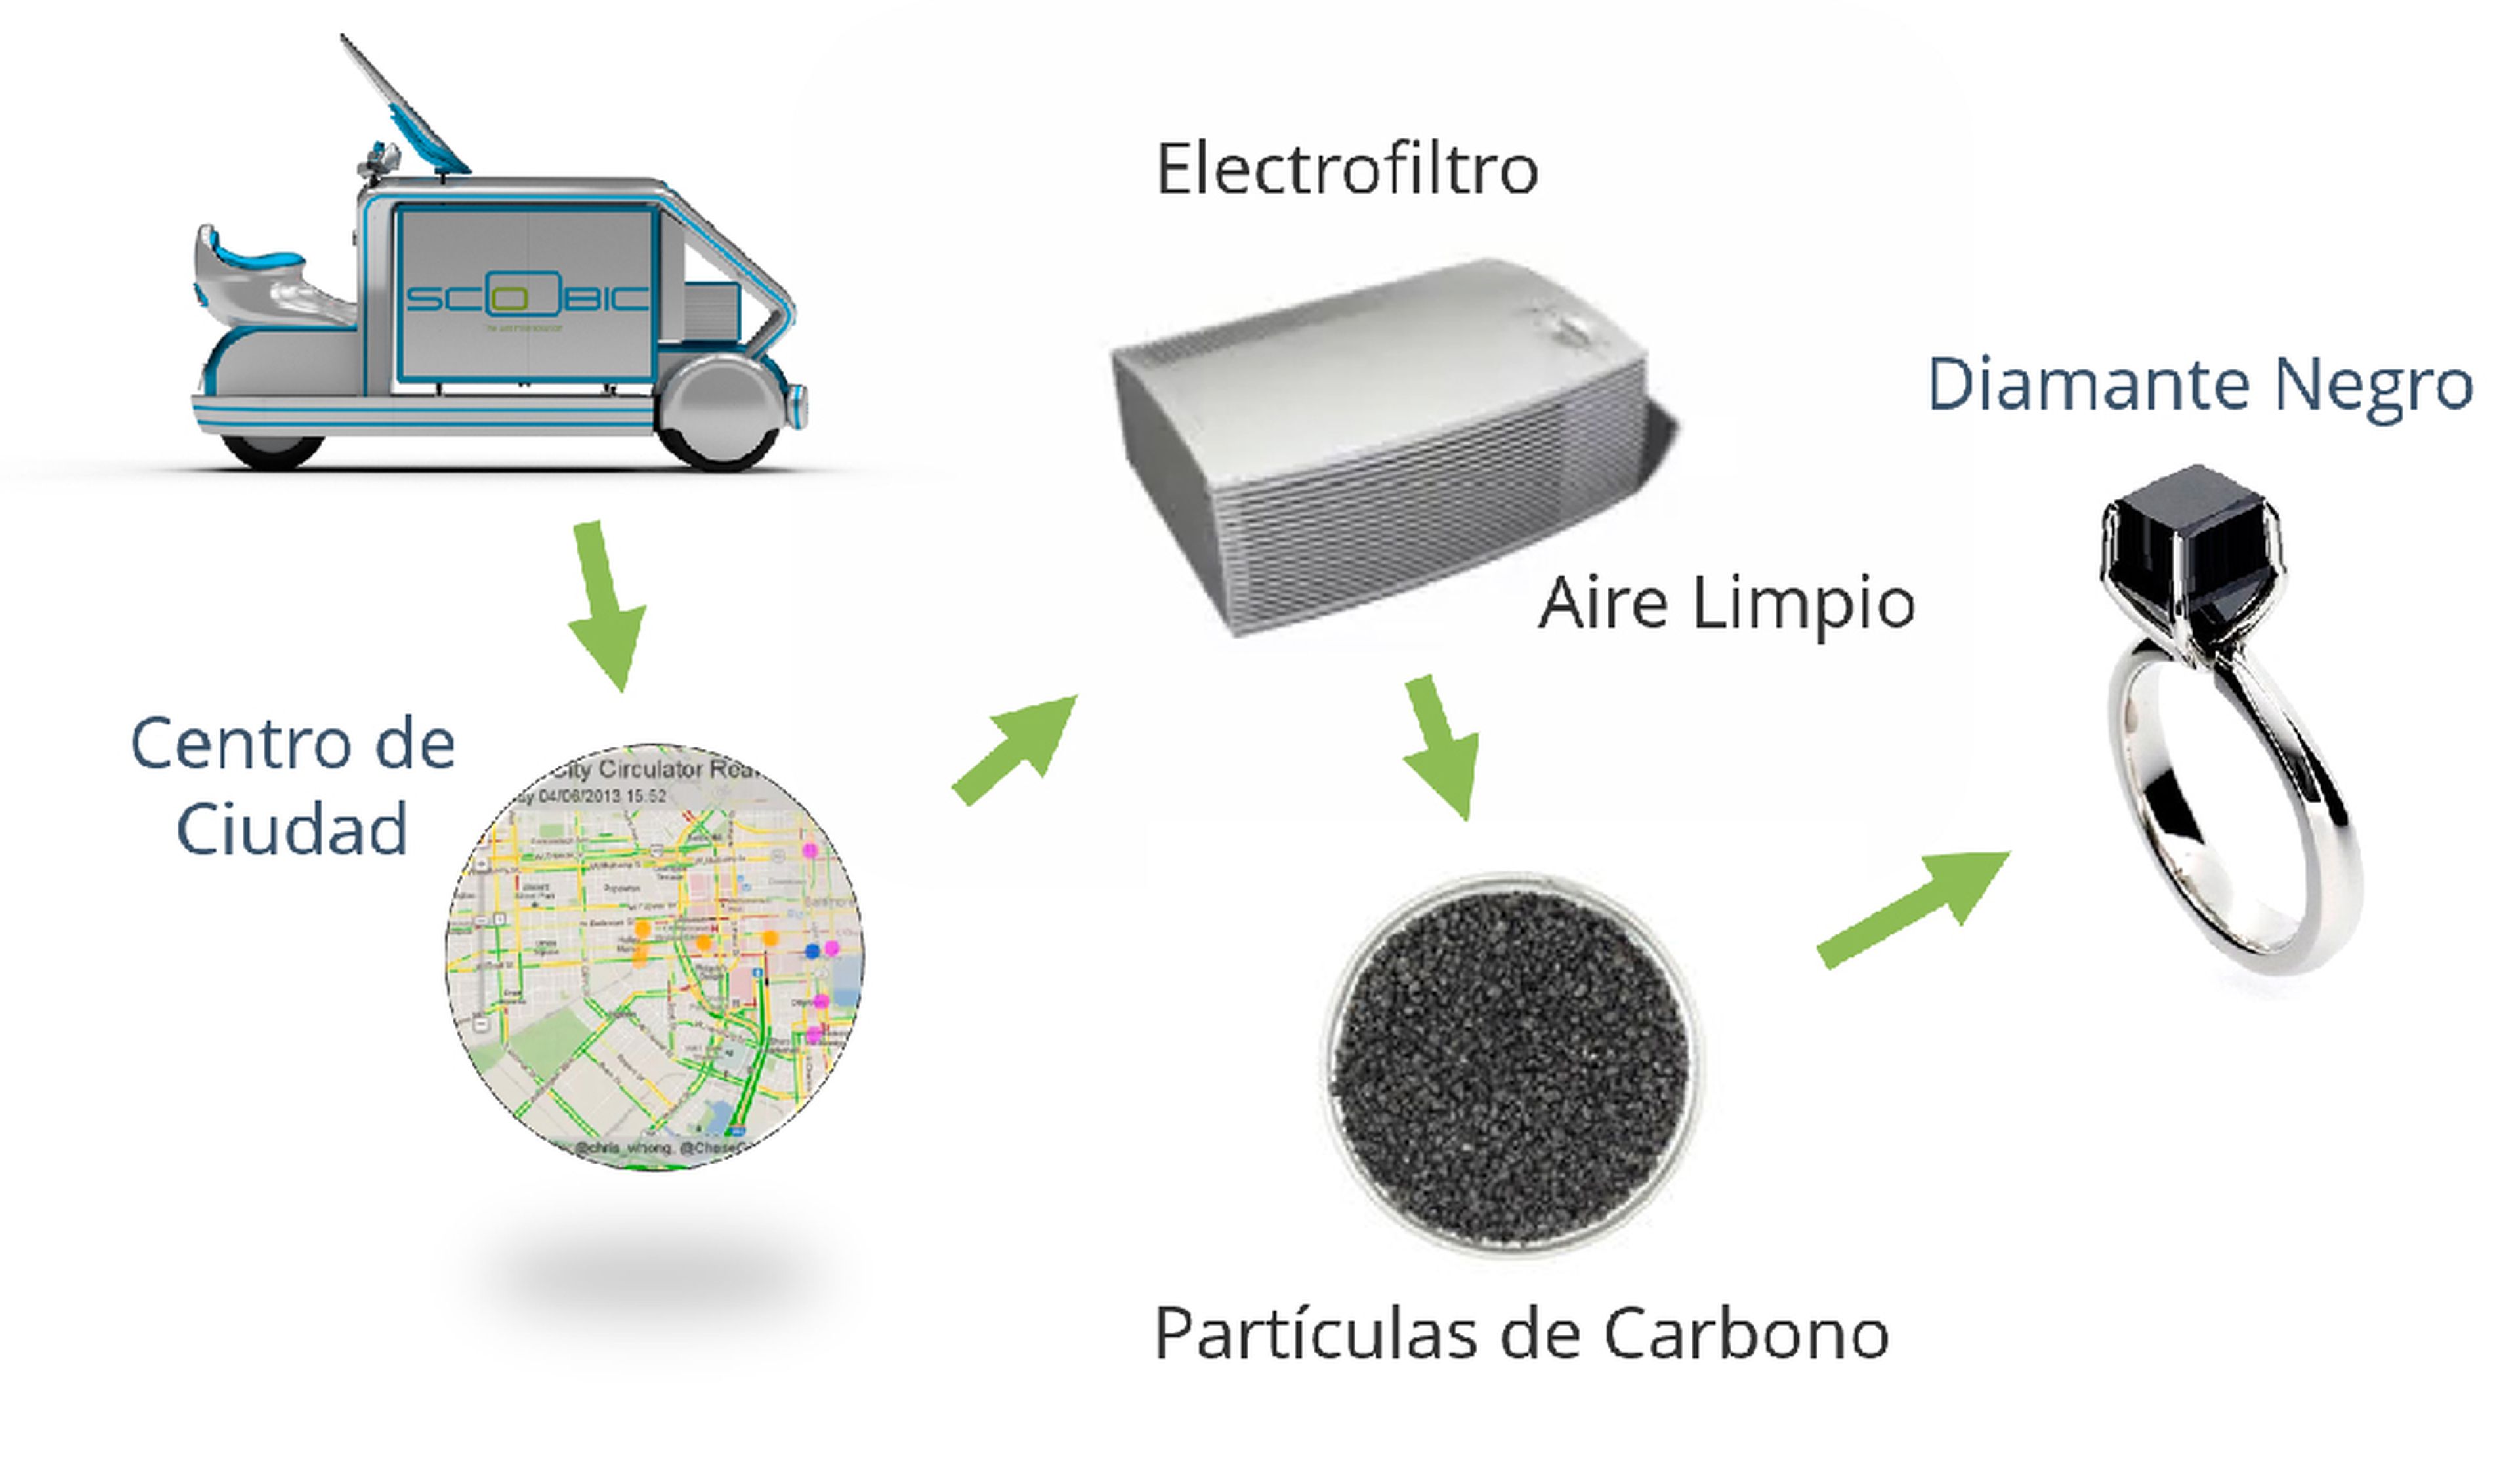 El vehículo de reparto eléctrico hecho en Sevilla que probará Carrefour y limpiará el aire a su paso por el centro de Madrid